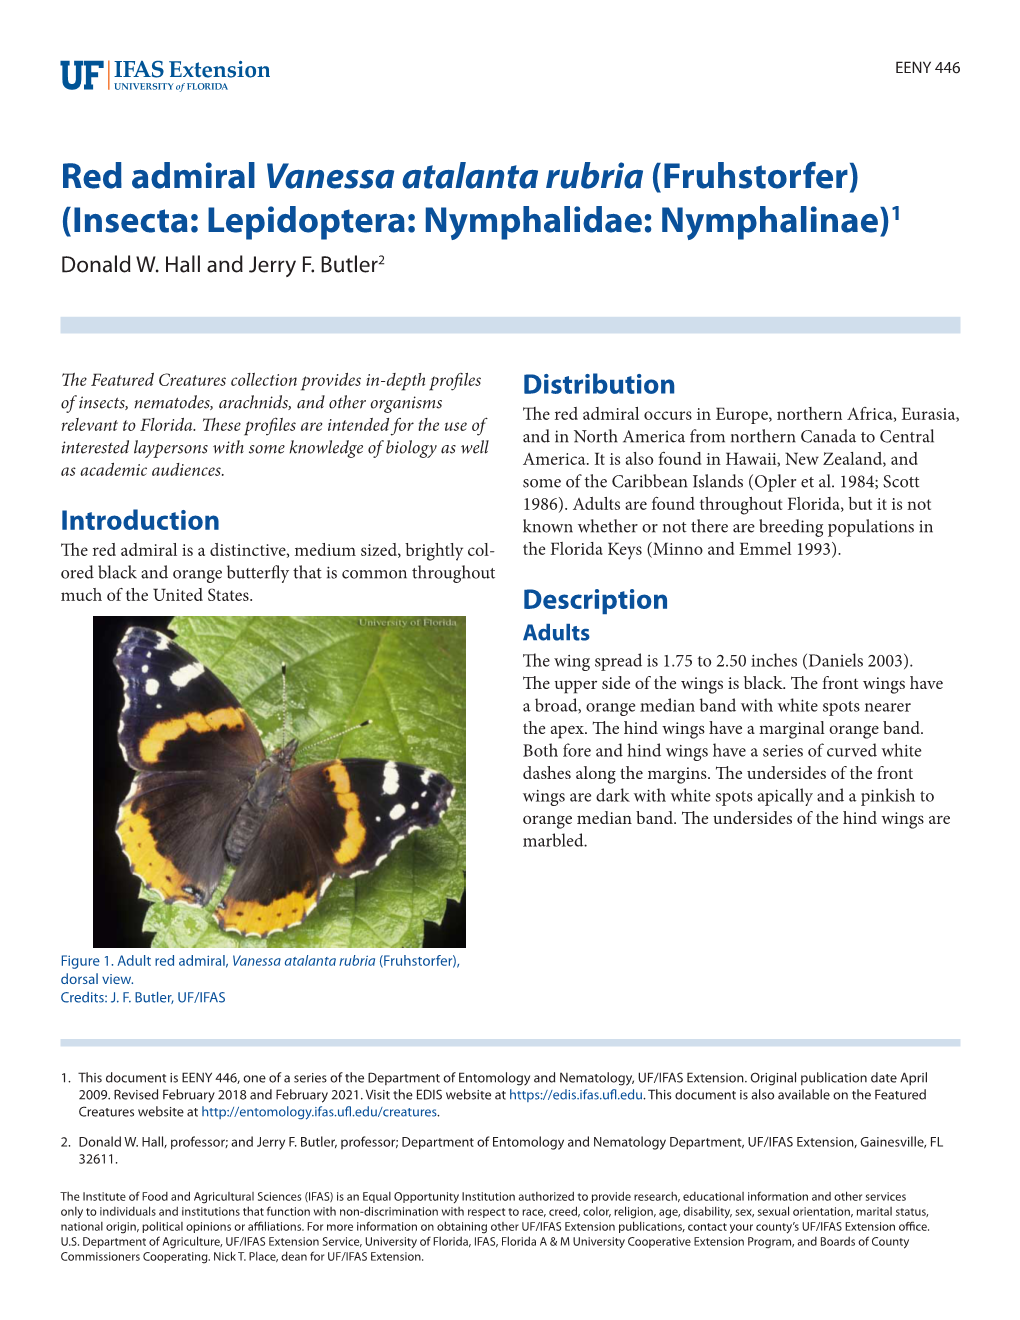 Red Admiral Vanessa Atalanta Rubria (Fruhstorfer) (Insecta: Lepidoptera: Nymphalidae: Nymphalinae)1 Donald W